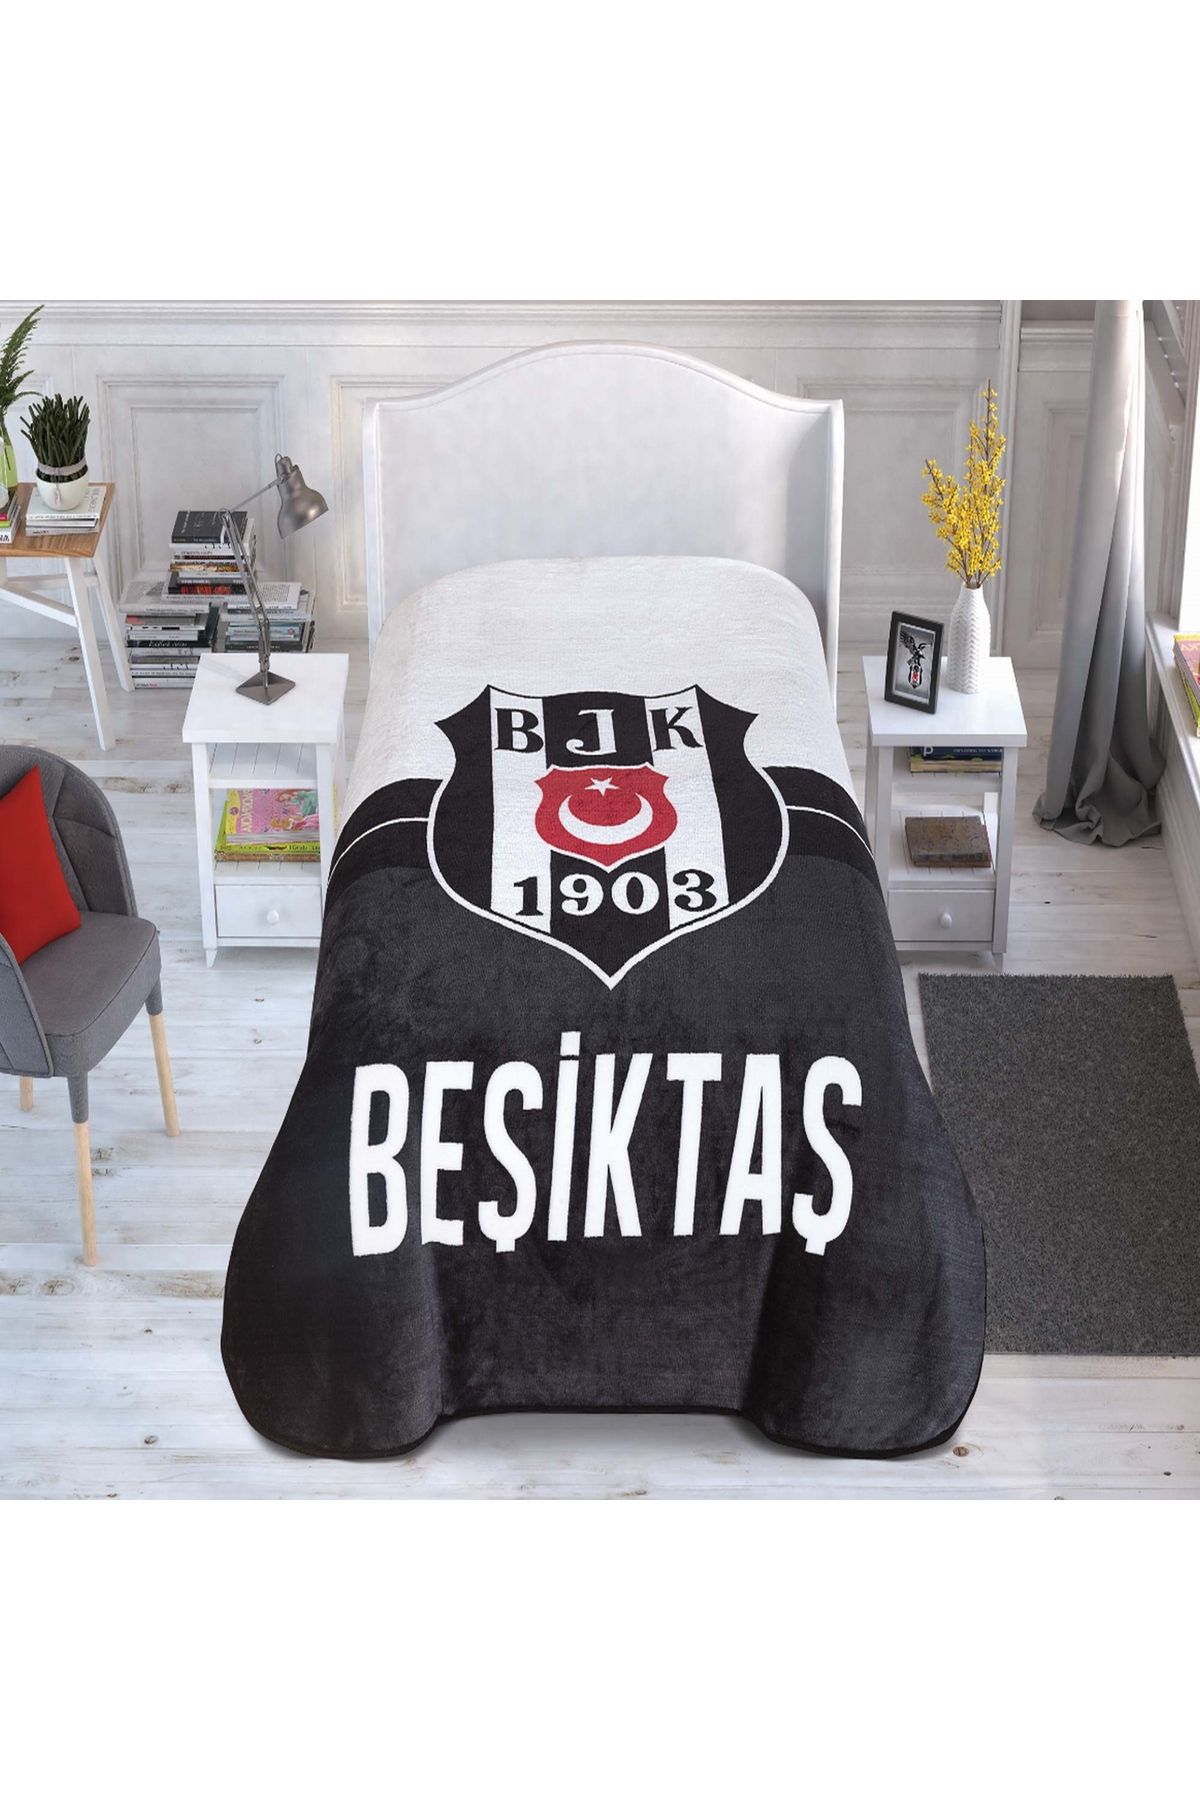 Taç Lisanslı Beşiktaş 1903 Logo Battaniye